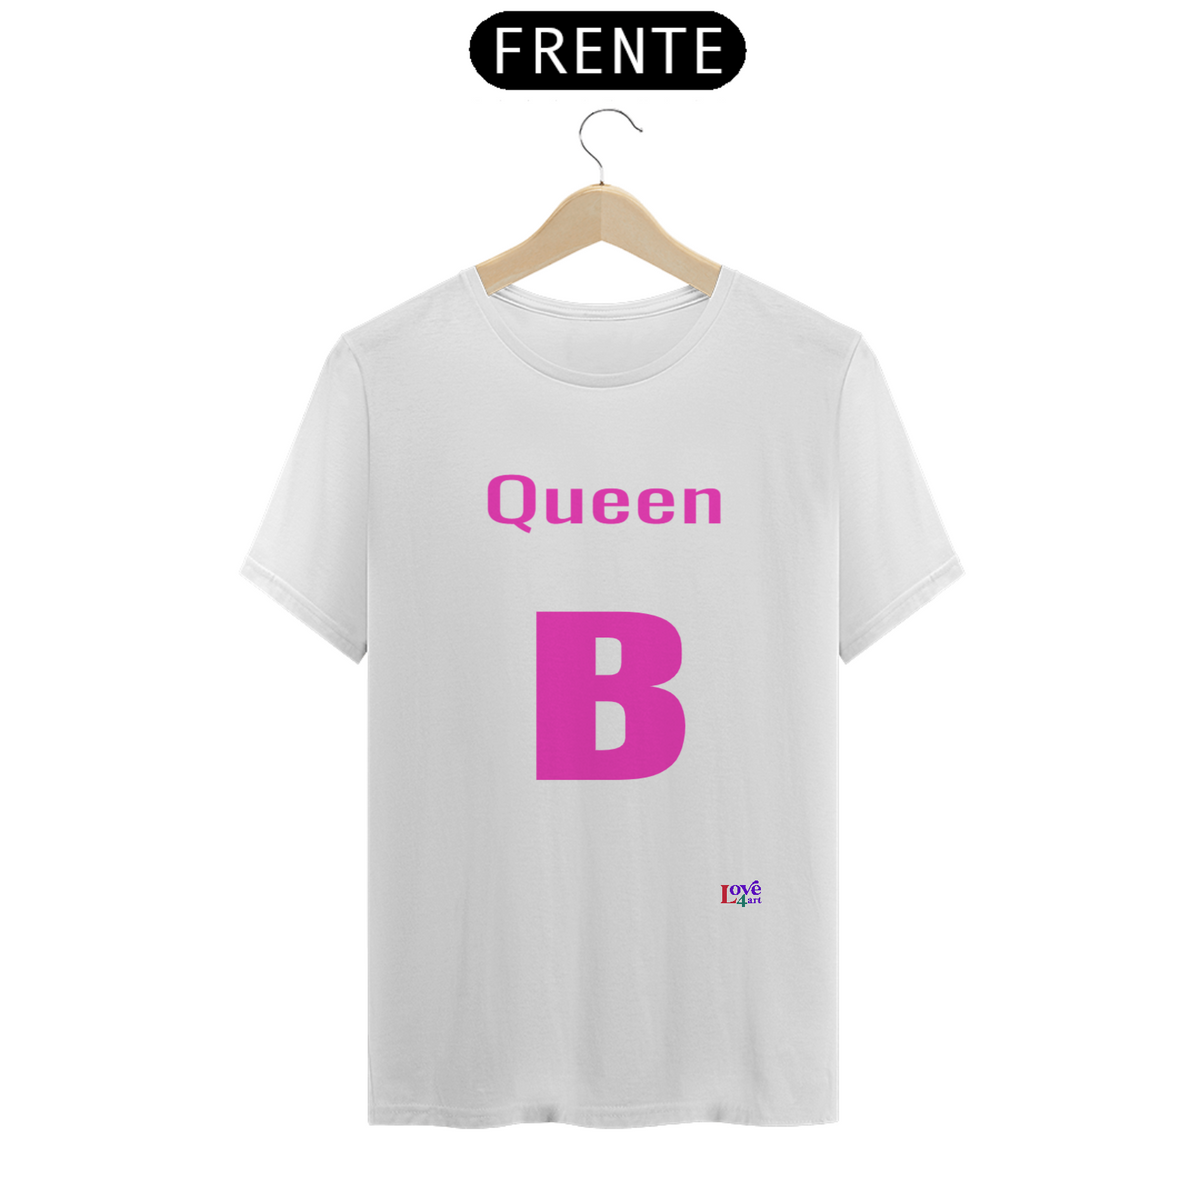 Nome do produto: ARTISTAS - Queen B